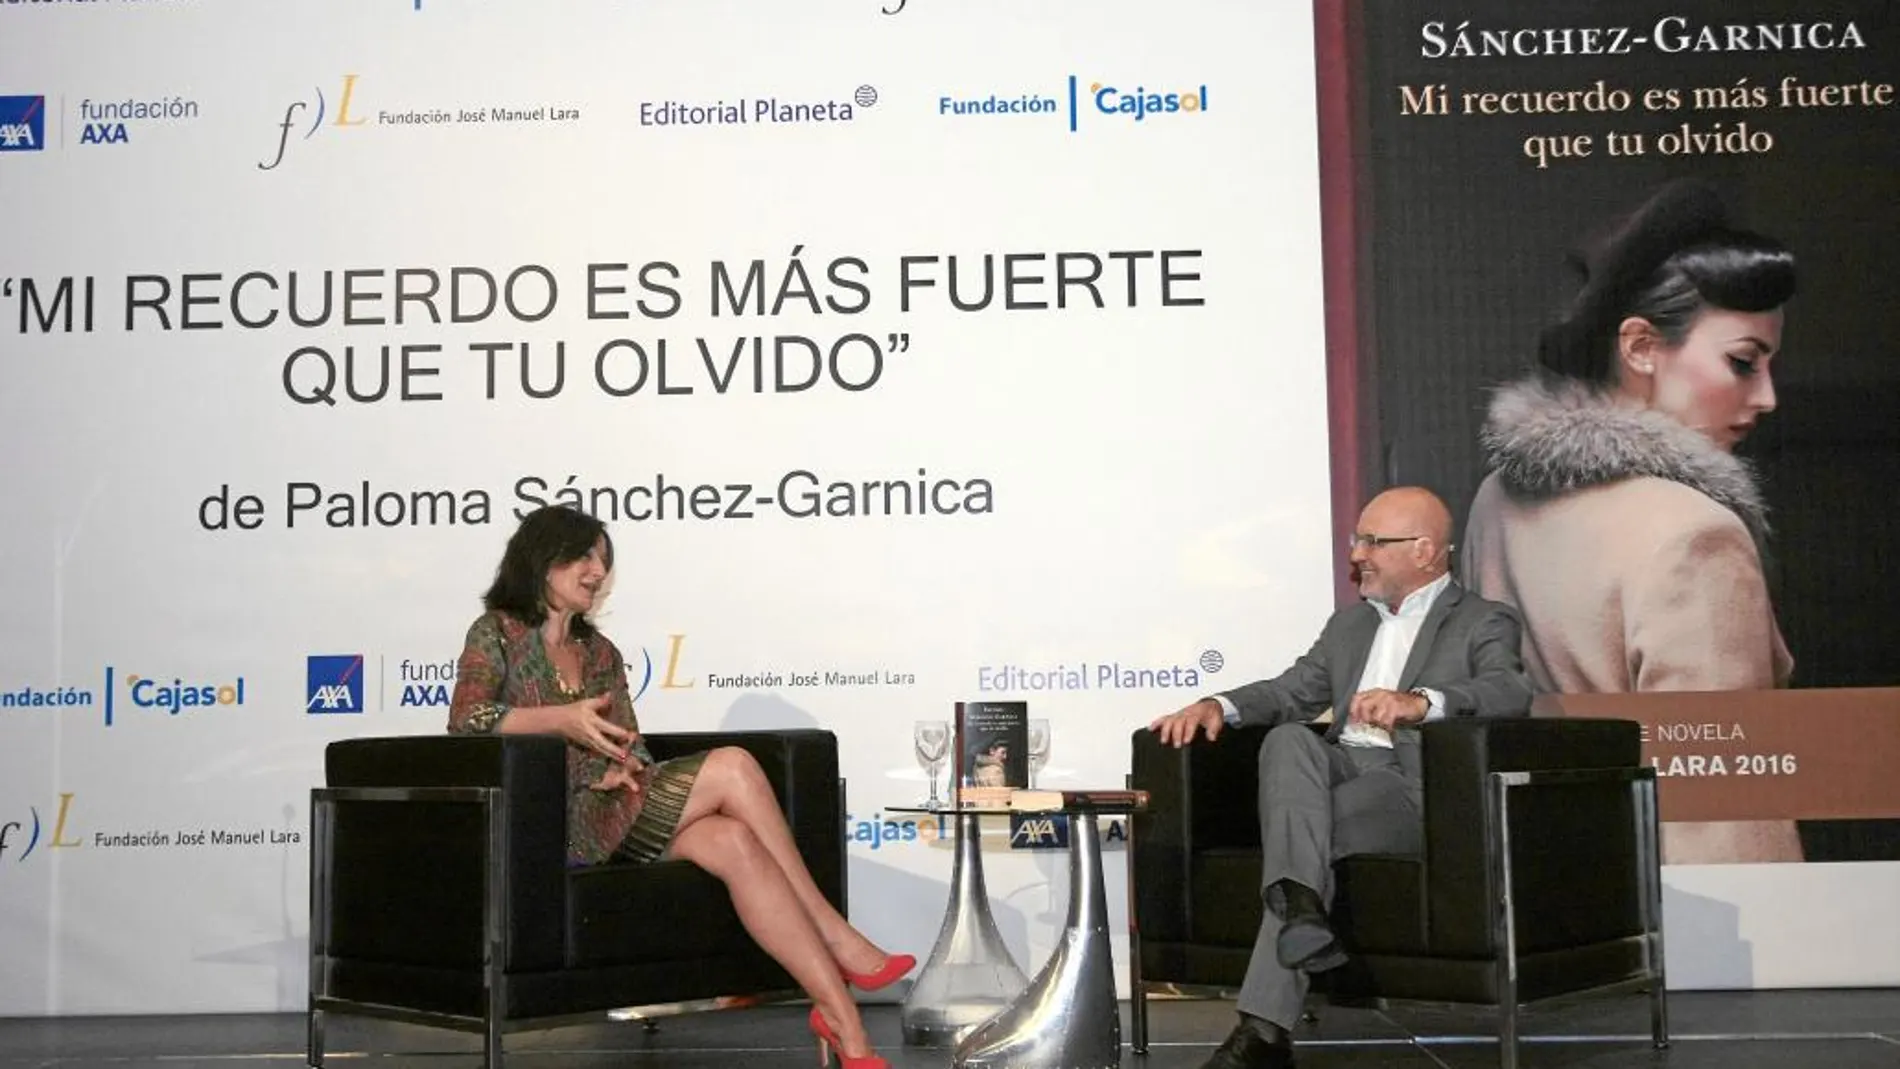 A la izquierda, la autora Paloma Sánchez-Garnica, durante el ameno diálogo sobre el libro y la literatura en general mantenido con el periodista Jesús Vigorra